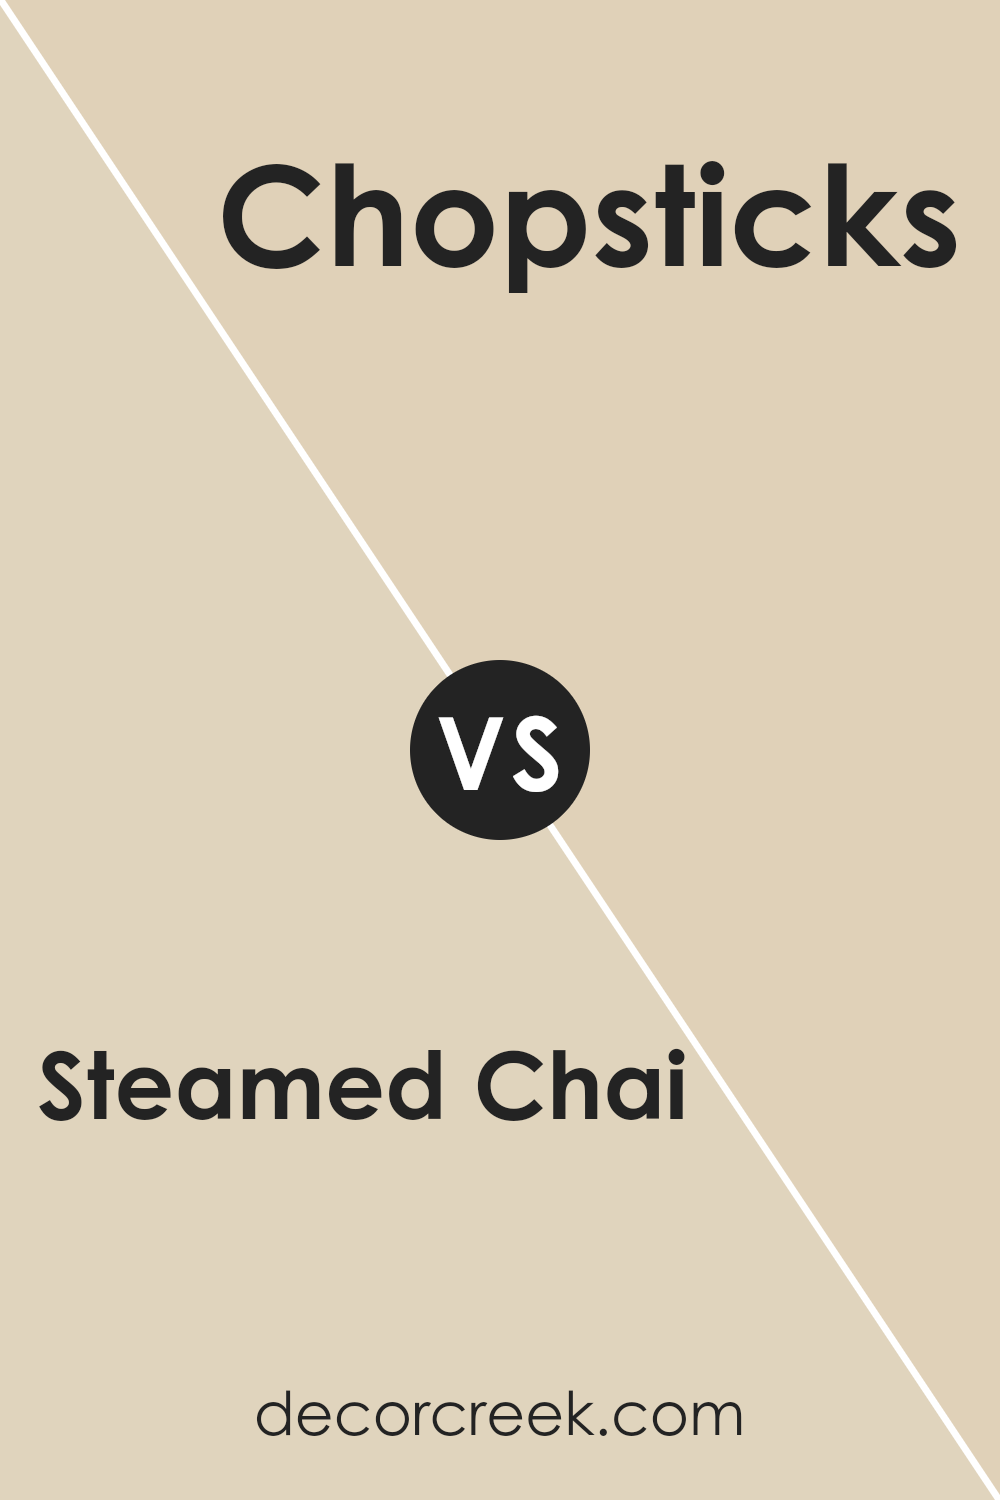 steamed_chai_sw_9509_vs_chopsticks_sw_7575